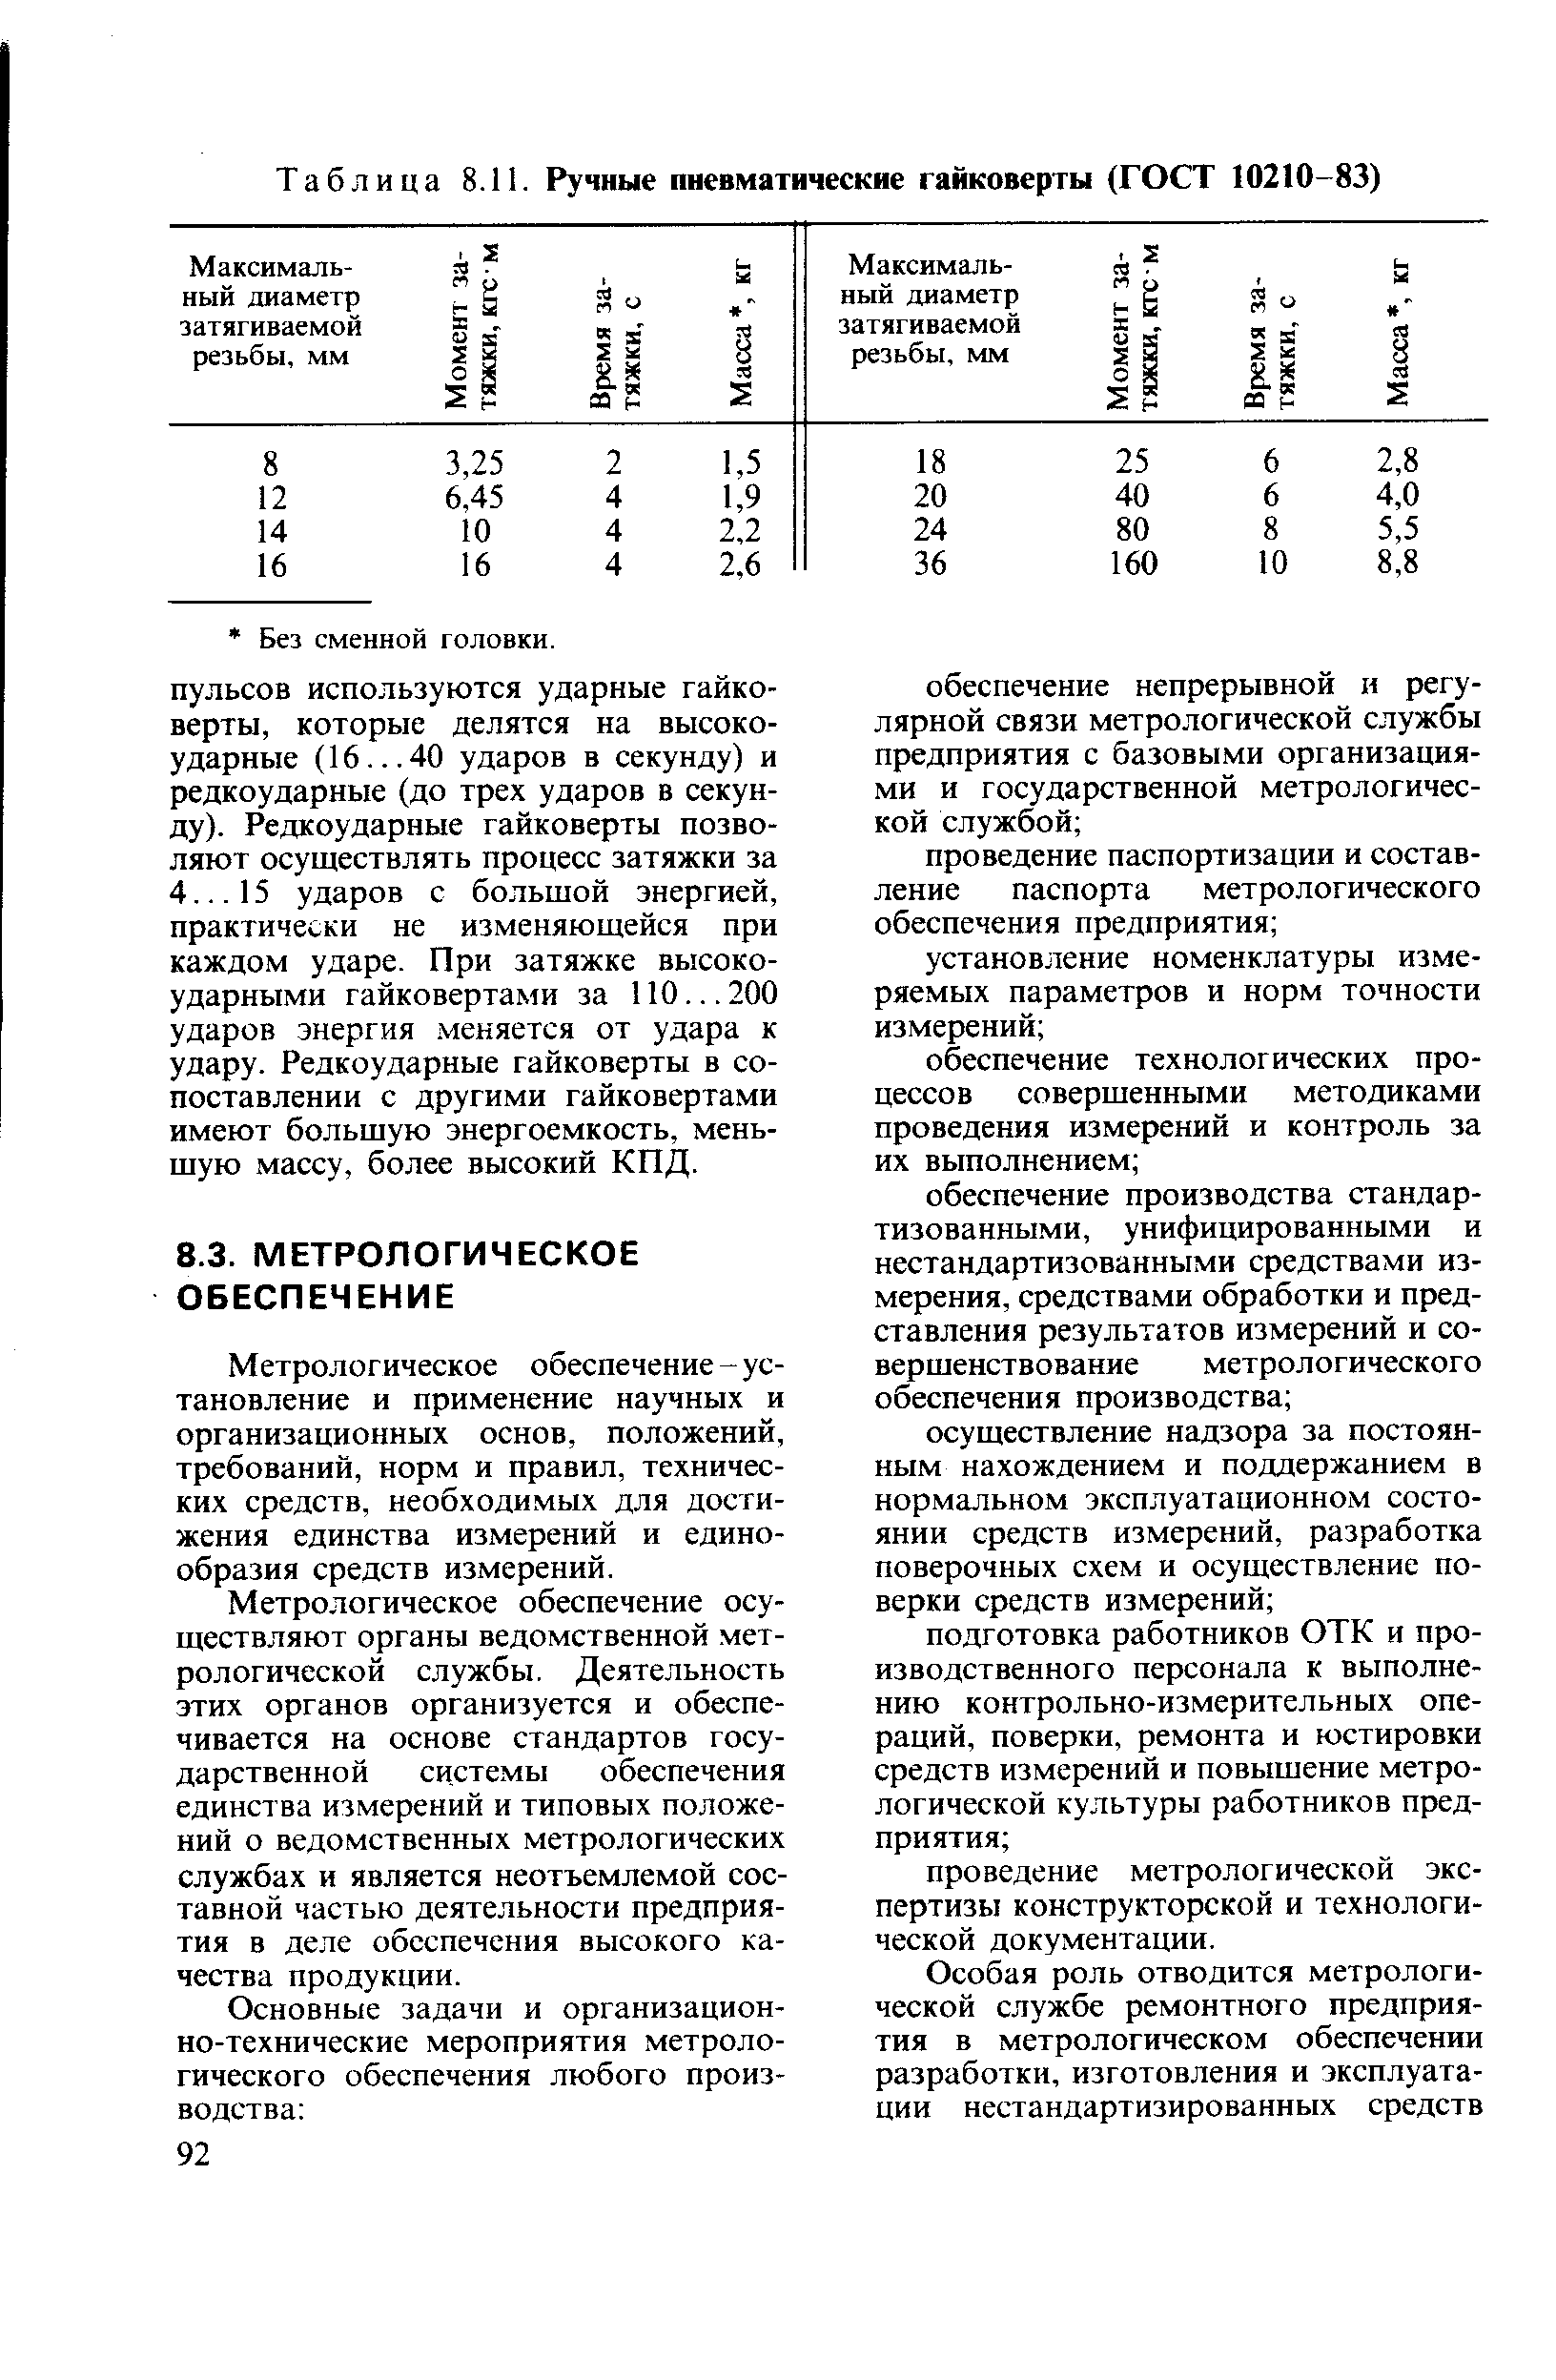 Таблица 8.11. Ручные пневматические гайковерты (ГОСТ 10210-83)
